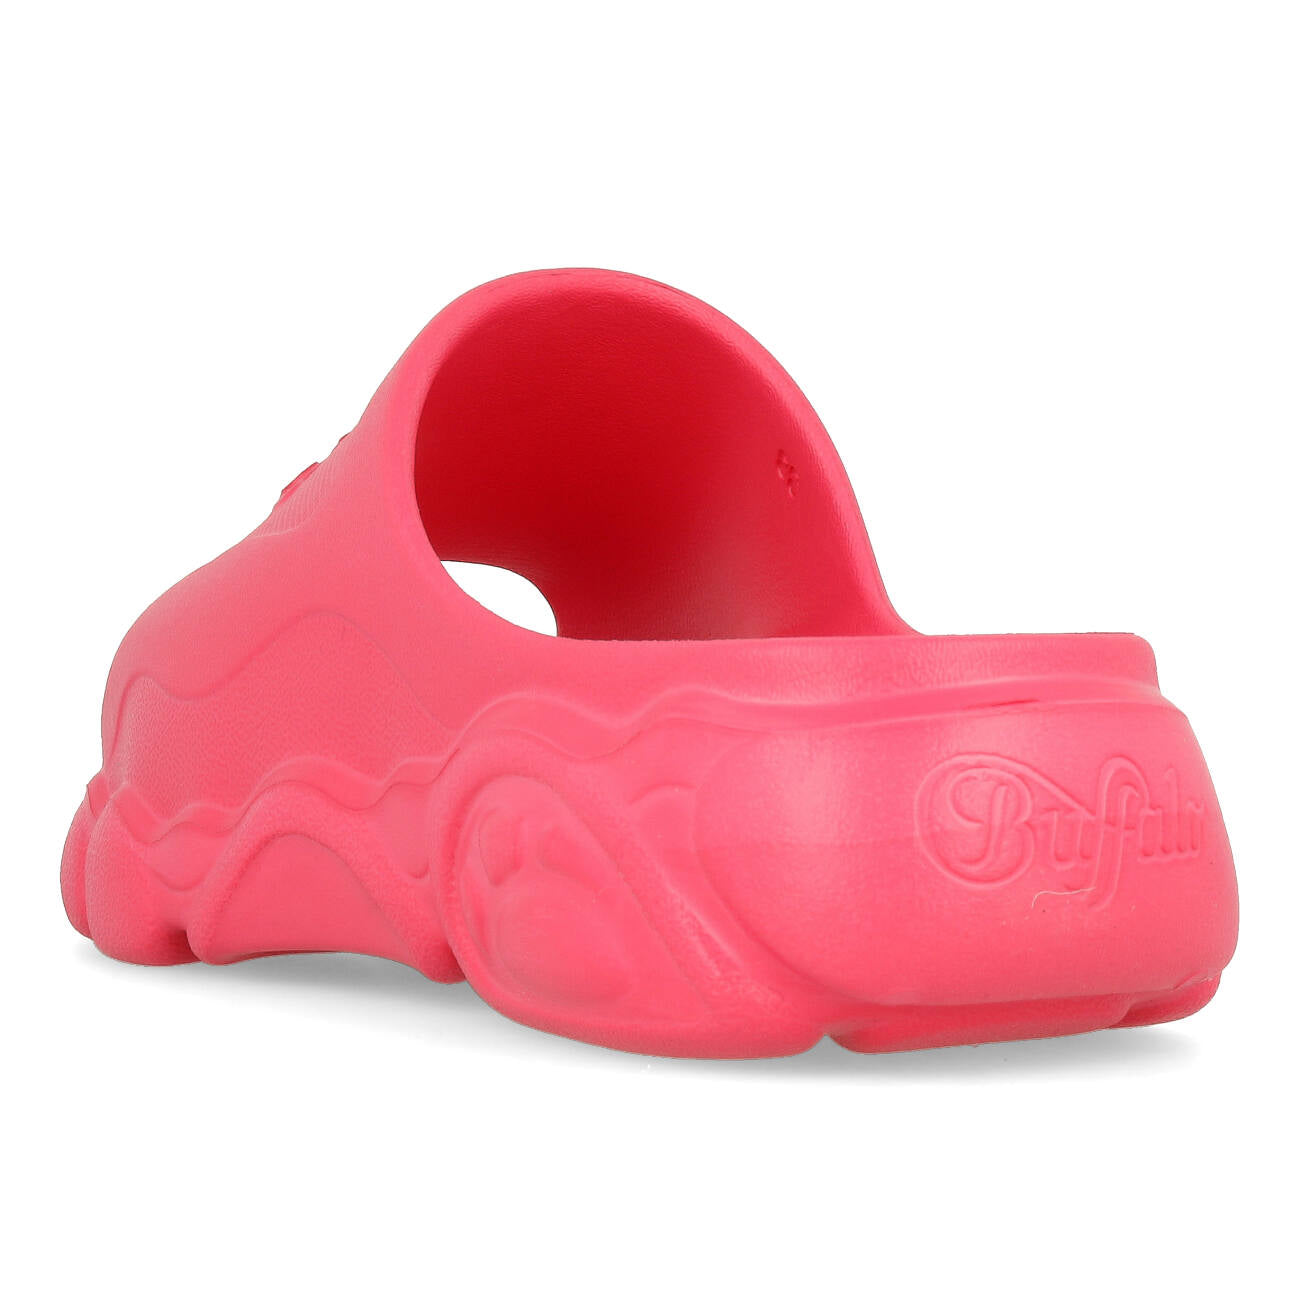 Buffalo CLD Slide Sandale Damen Vegan Foam Hot Pink